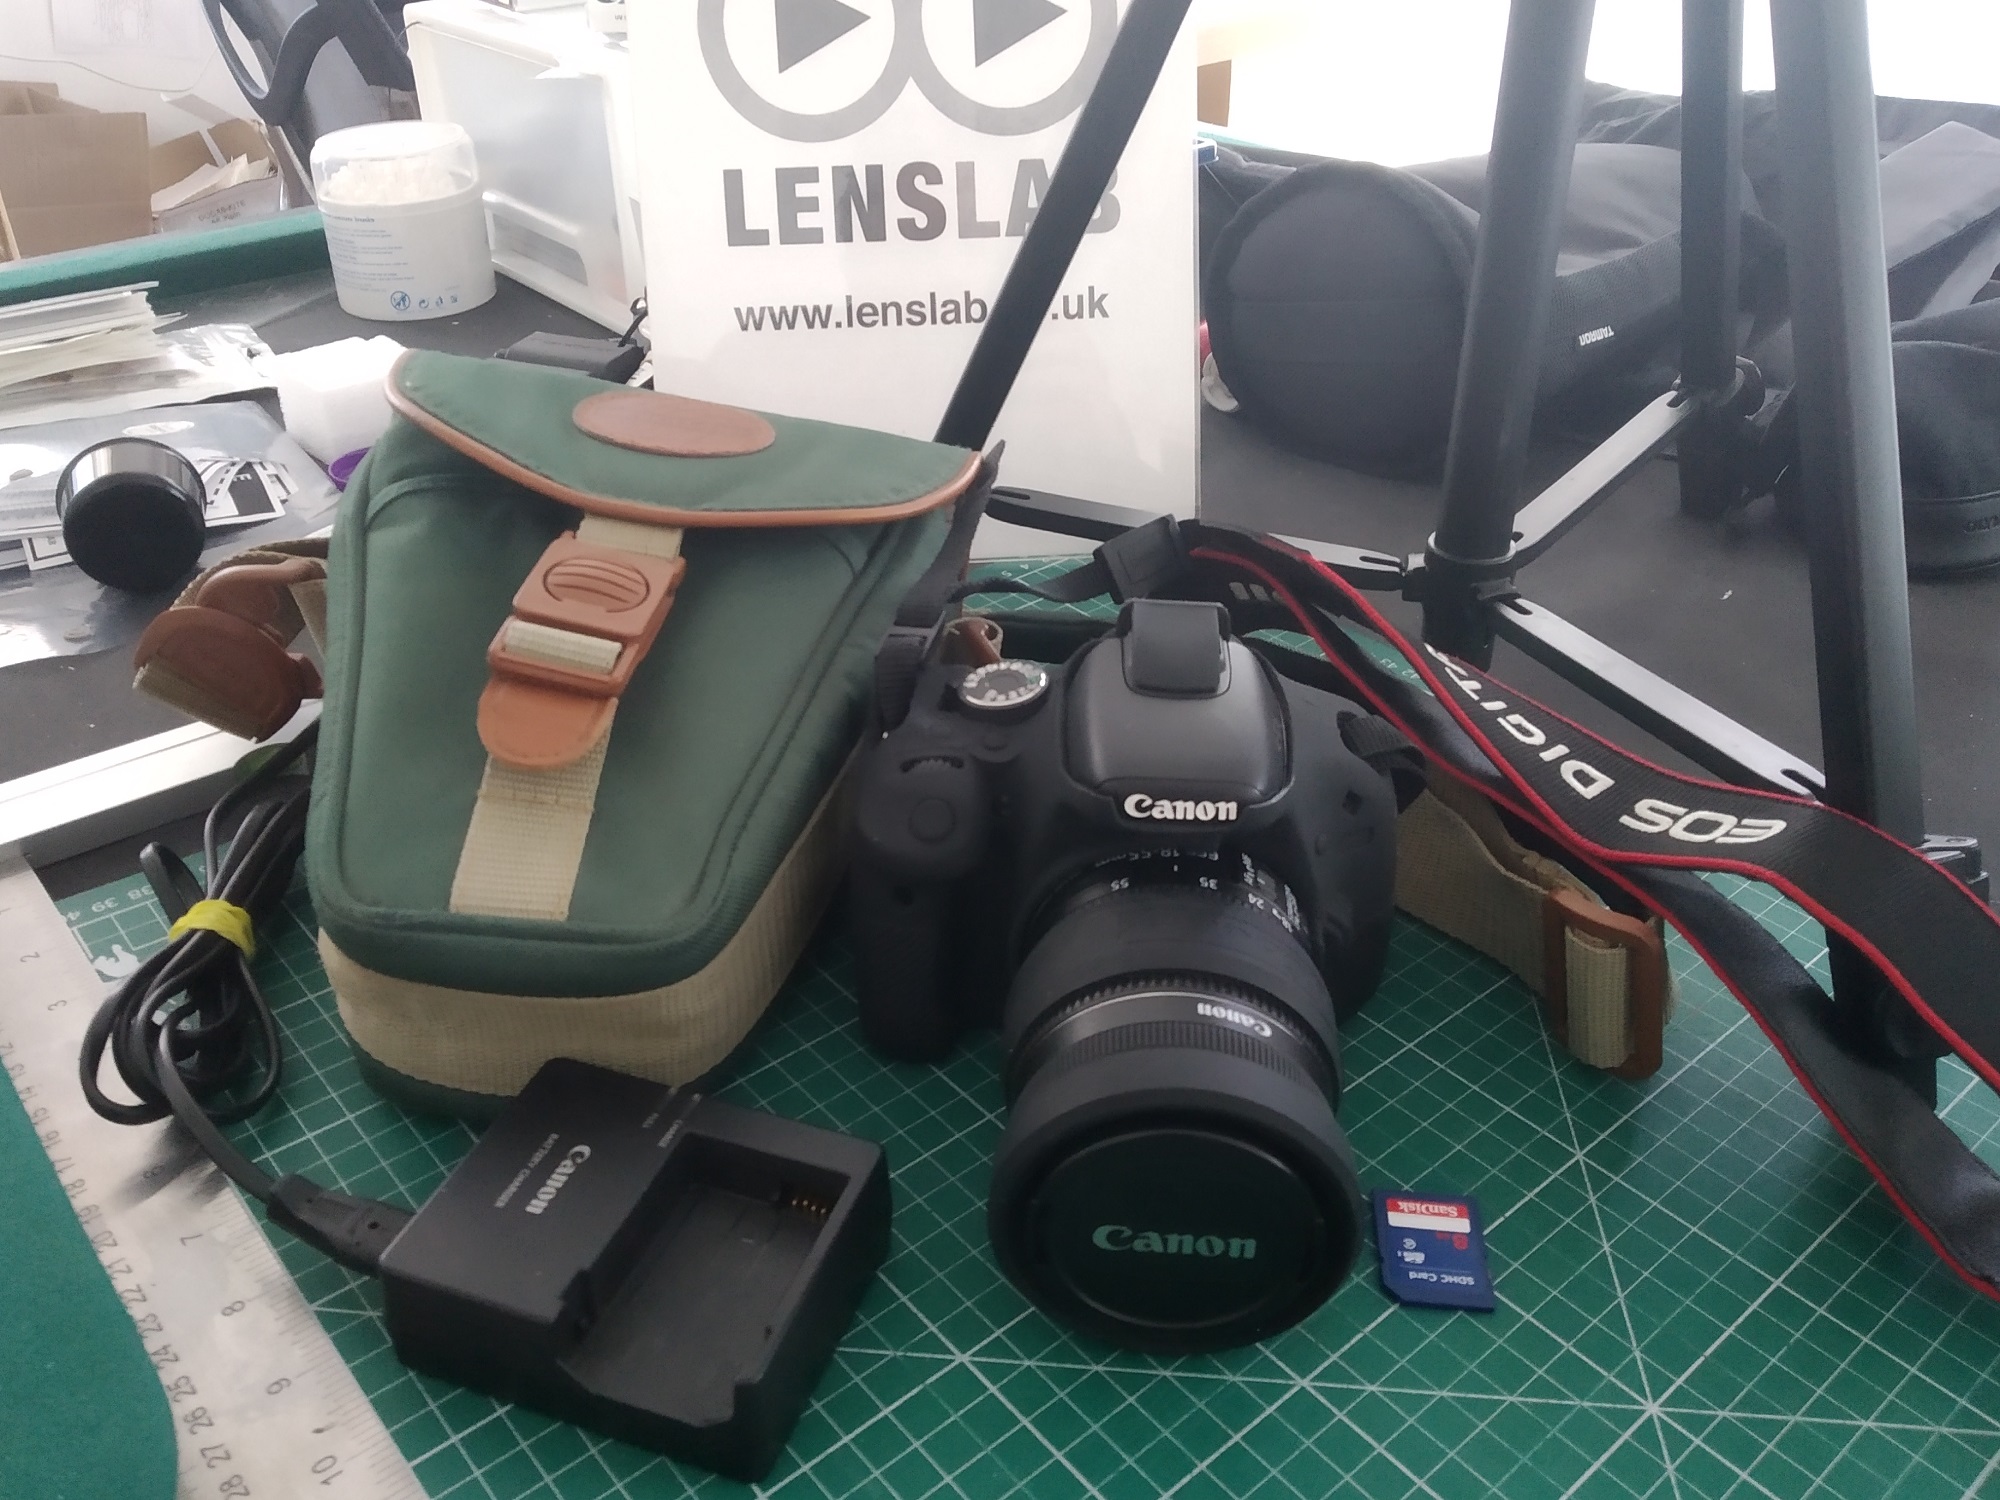 Canon 600d, 18-55mm lens, Tripod, Case, Card, Bumpers